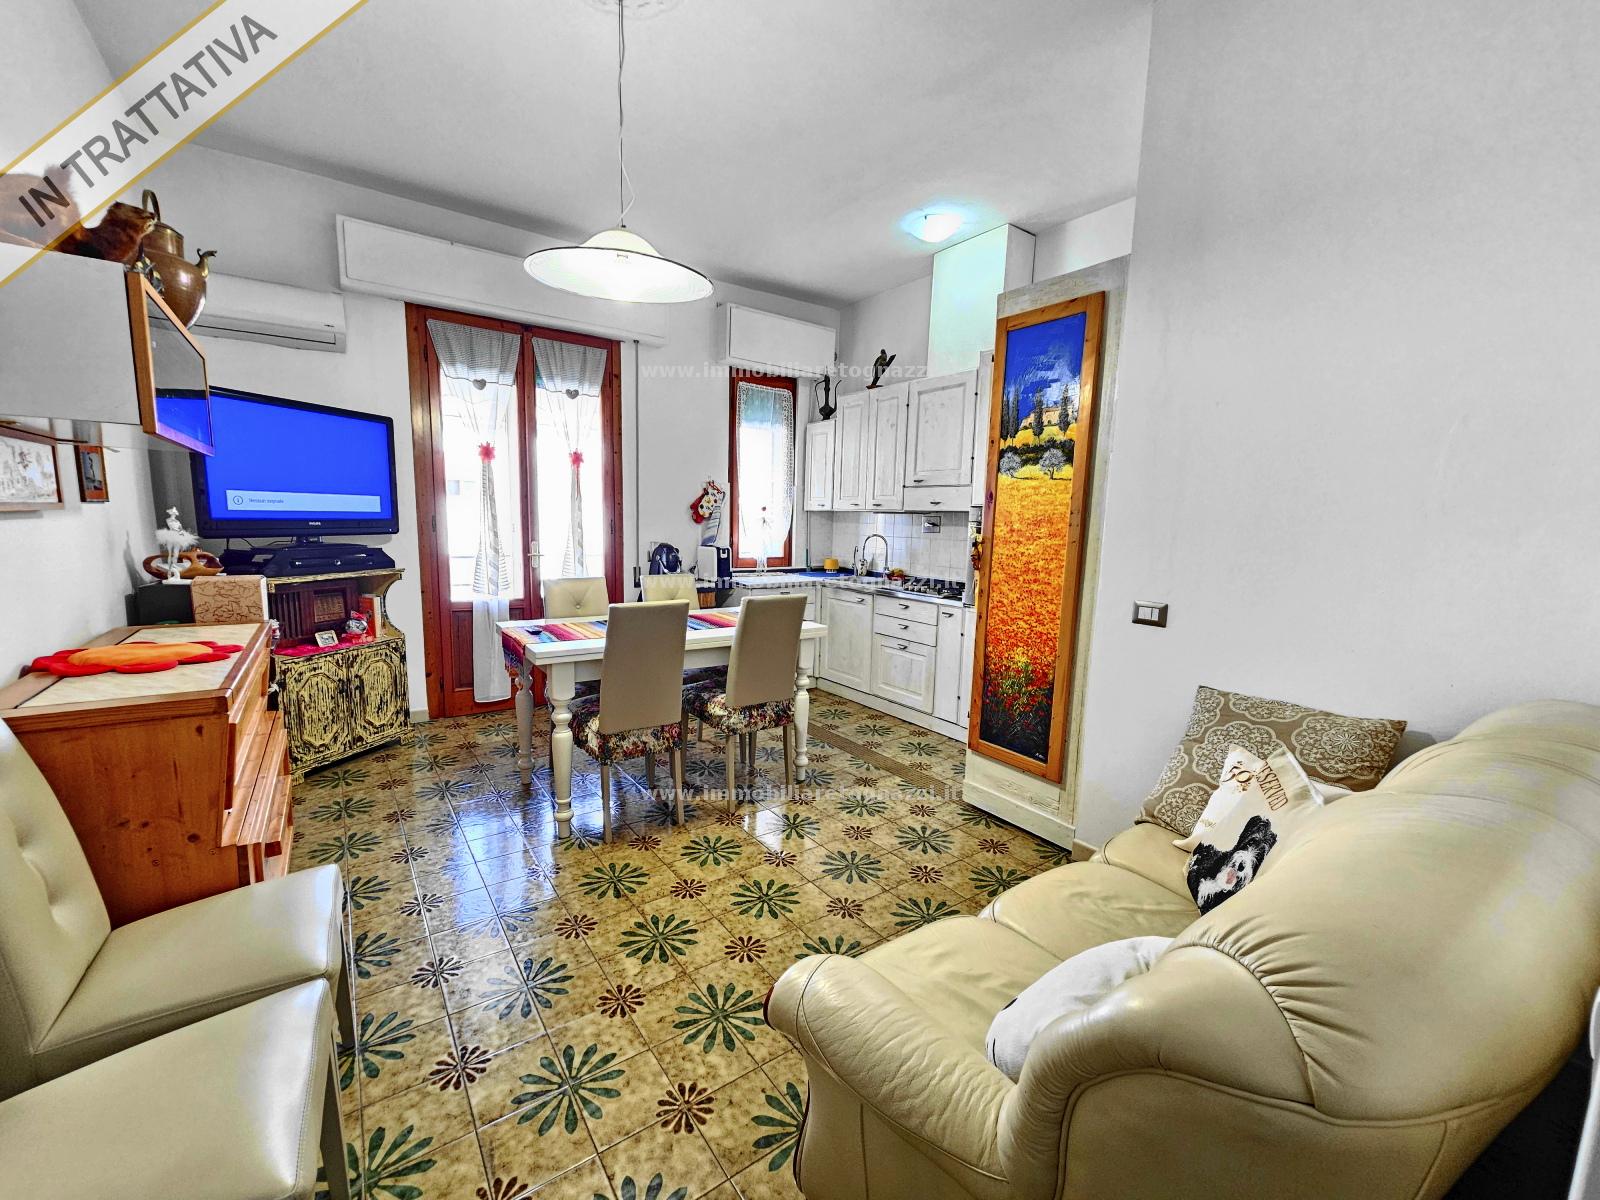 Appartamento in vendita a Certaldo, 3 locali, prezzo € 140.000 | PortaleAgenzieImmobiliari.it